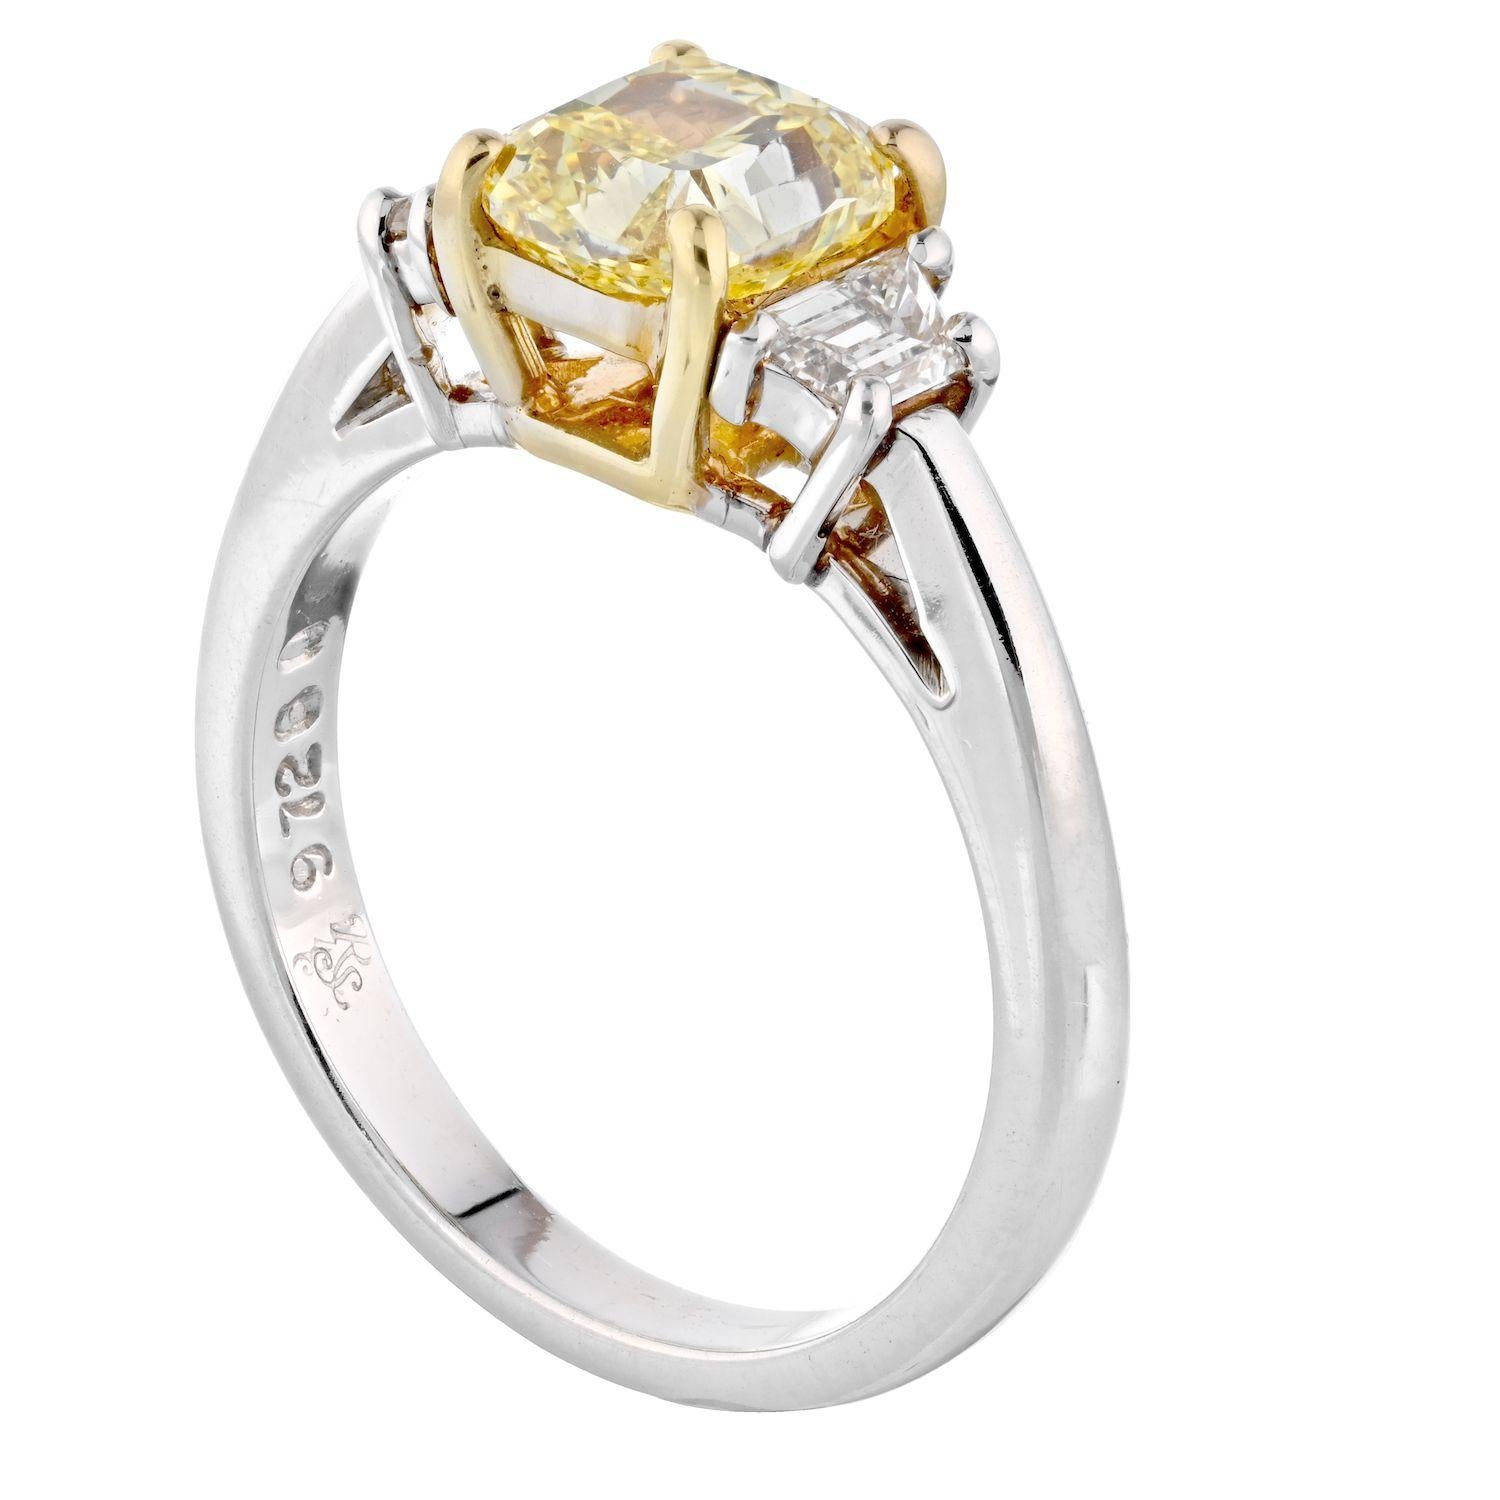 Très élégante et stylée, cette bague de fiançailles en diamant jaune fantaisie de taille radiant. Structurée comme une bague à trois pierres, cette magnifique bague de fiançailles présente un diamant central de 1,51 carats qui est un diamant naturel